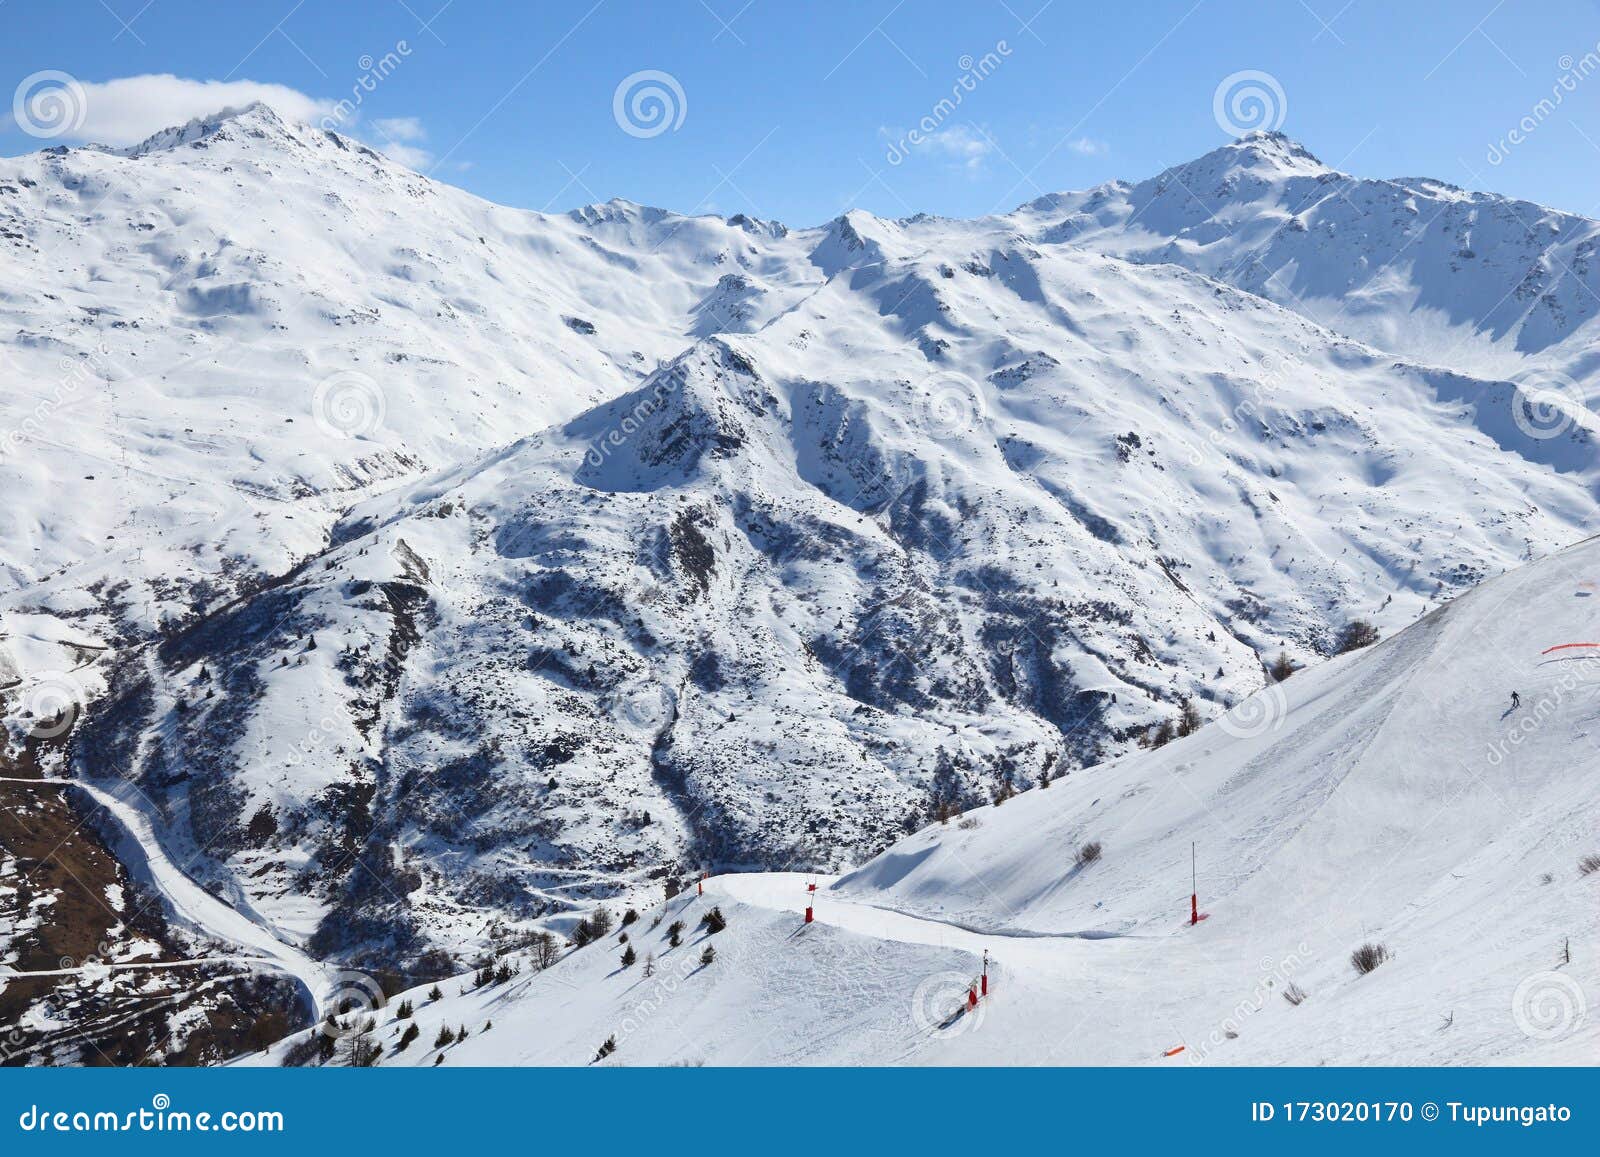 France ski resort stock photo. Image of slope, galibierthabor - 173020170